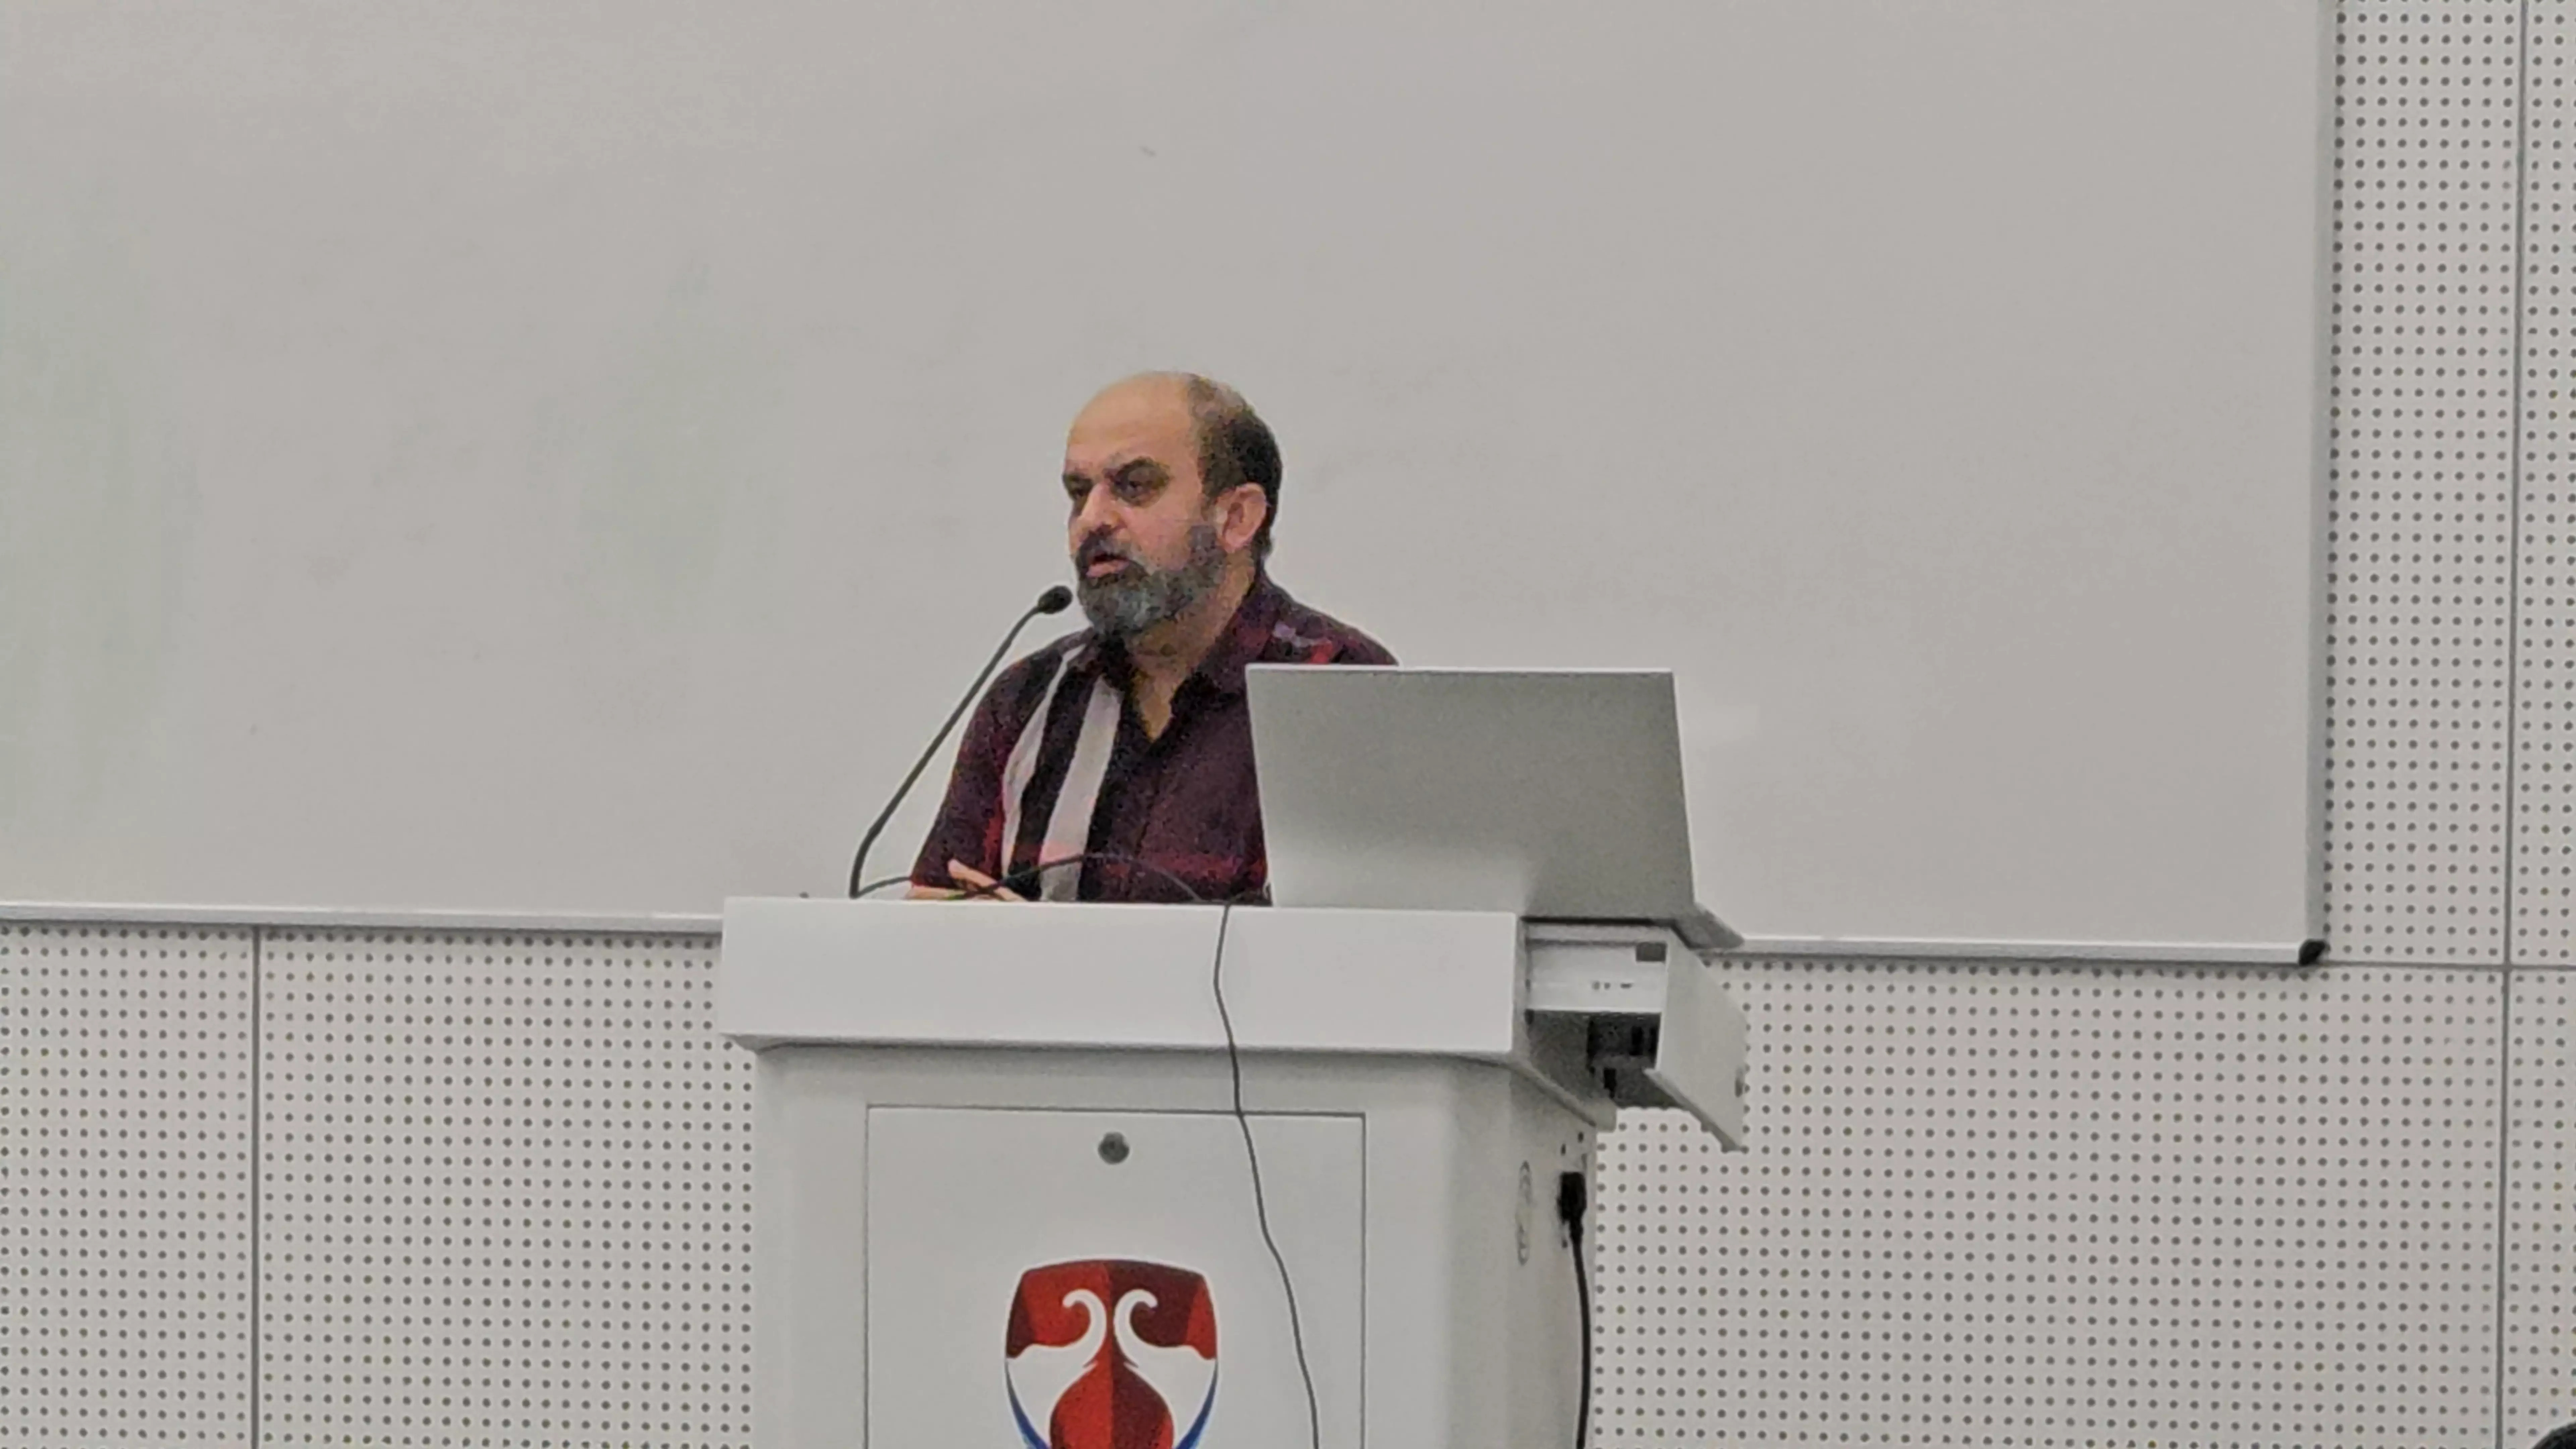 Keynote speaker Dr. Samir Kapur